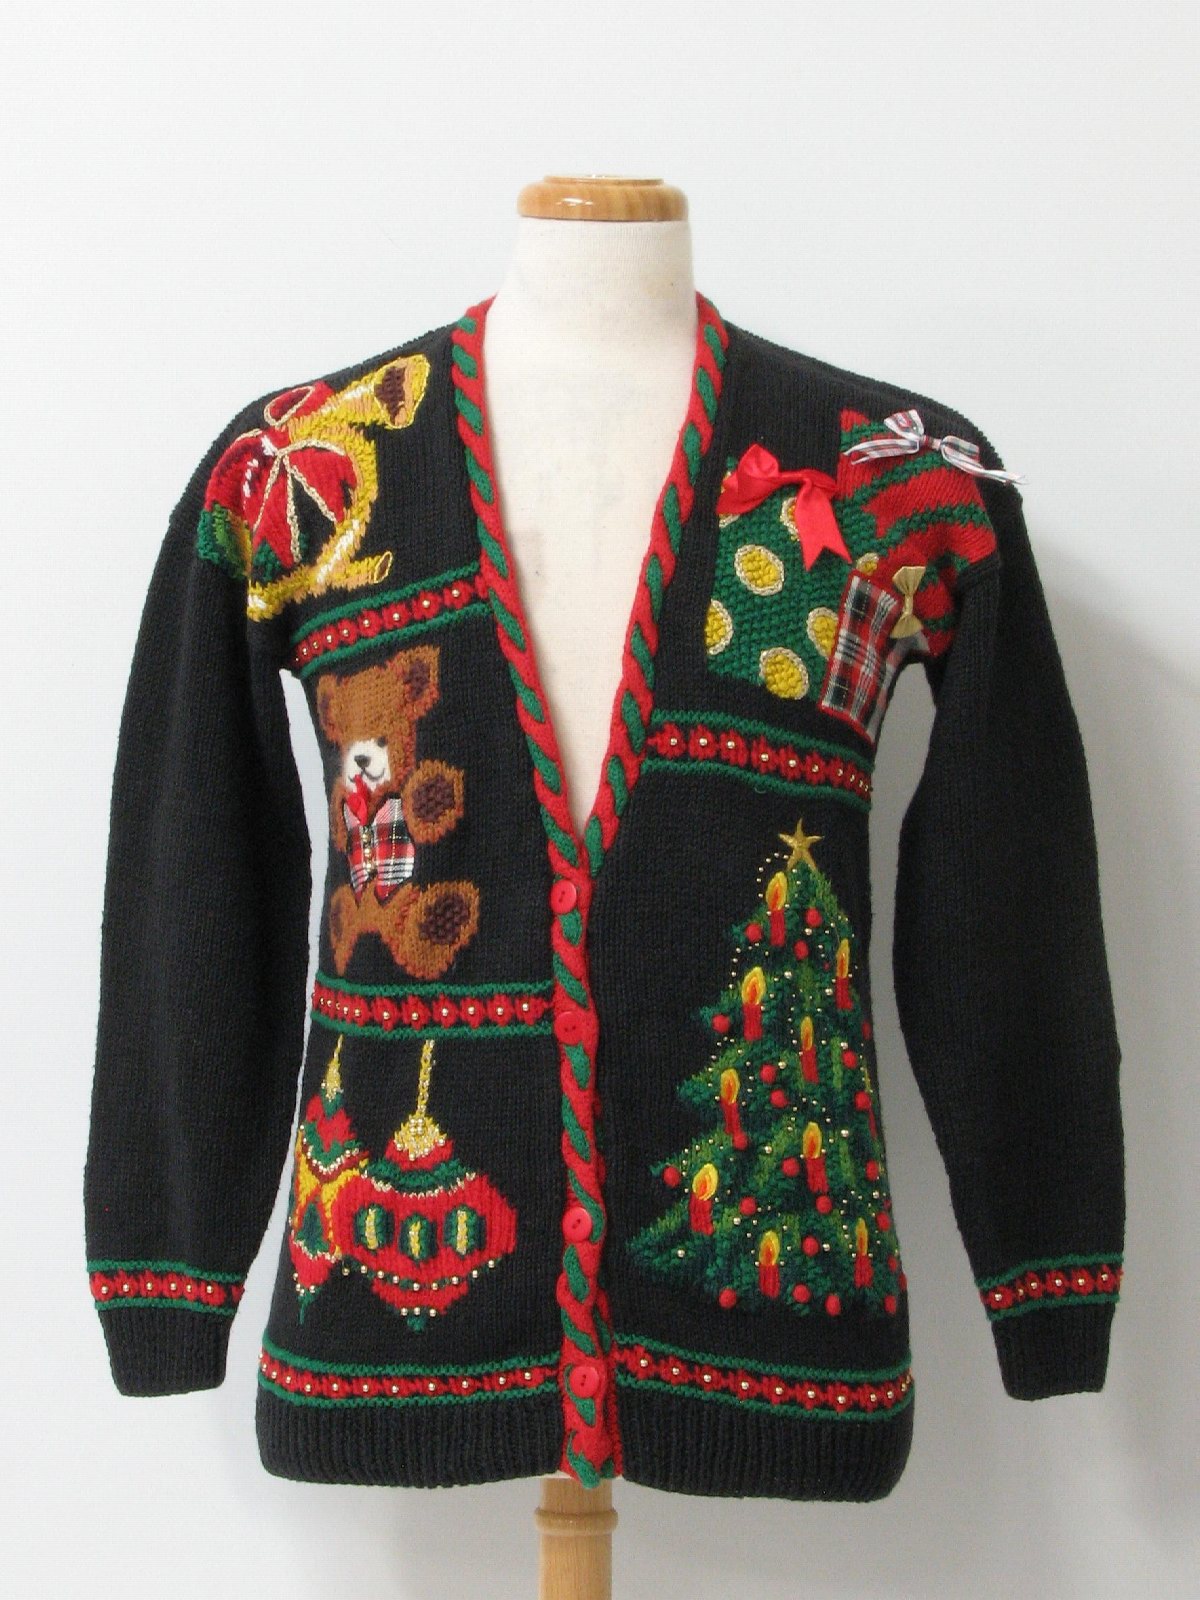 Ugly Christmas Cardigan Sweater: -Marisa Christina- Unisex black ...